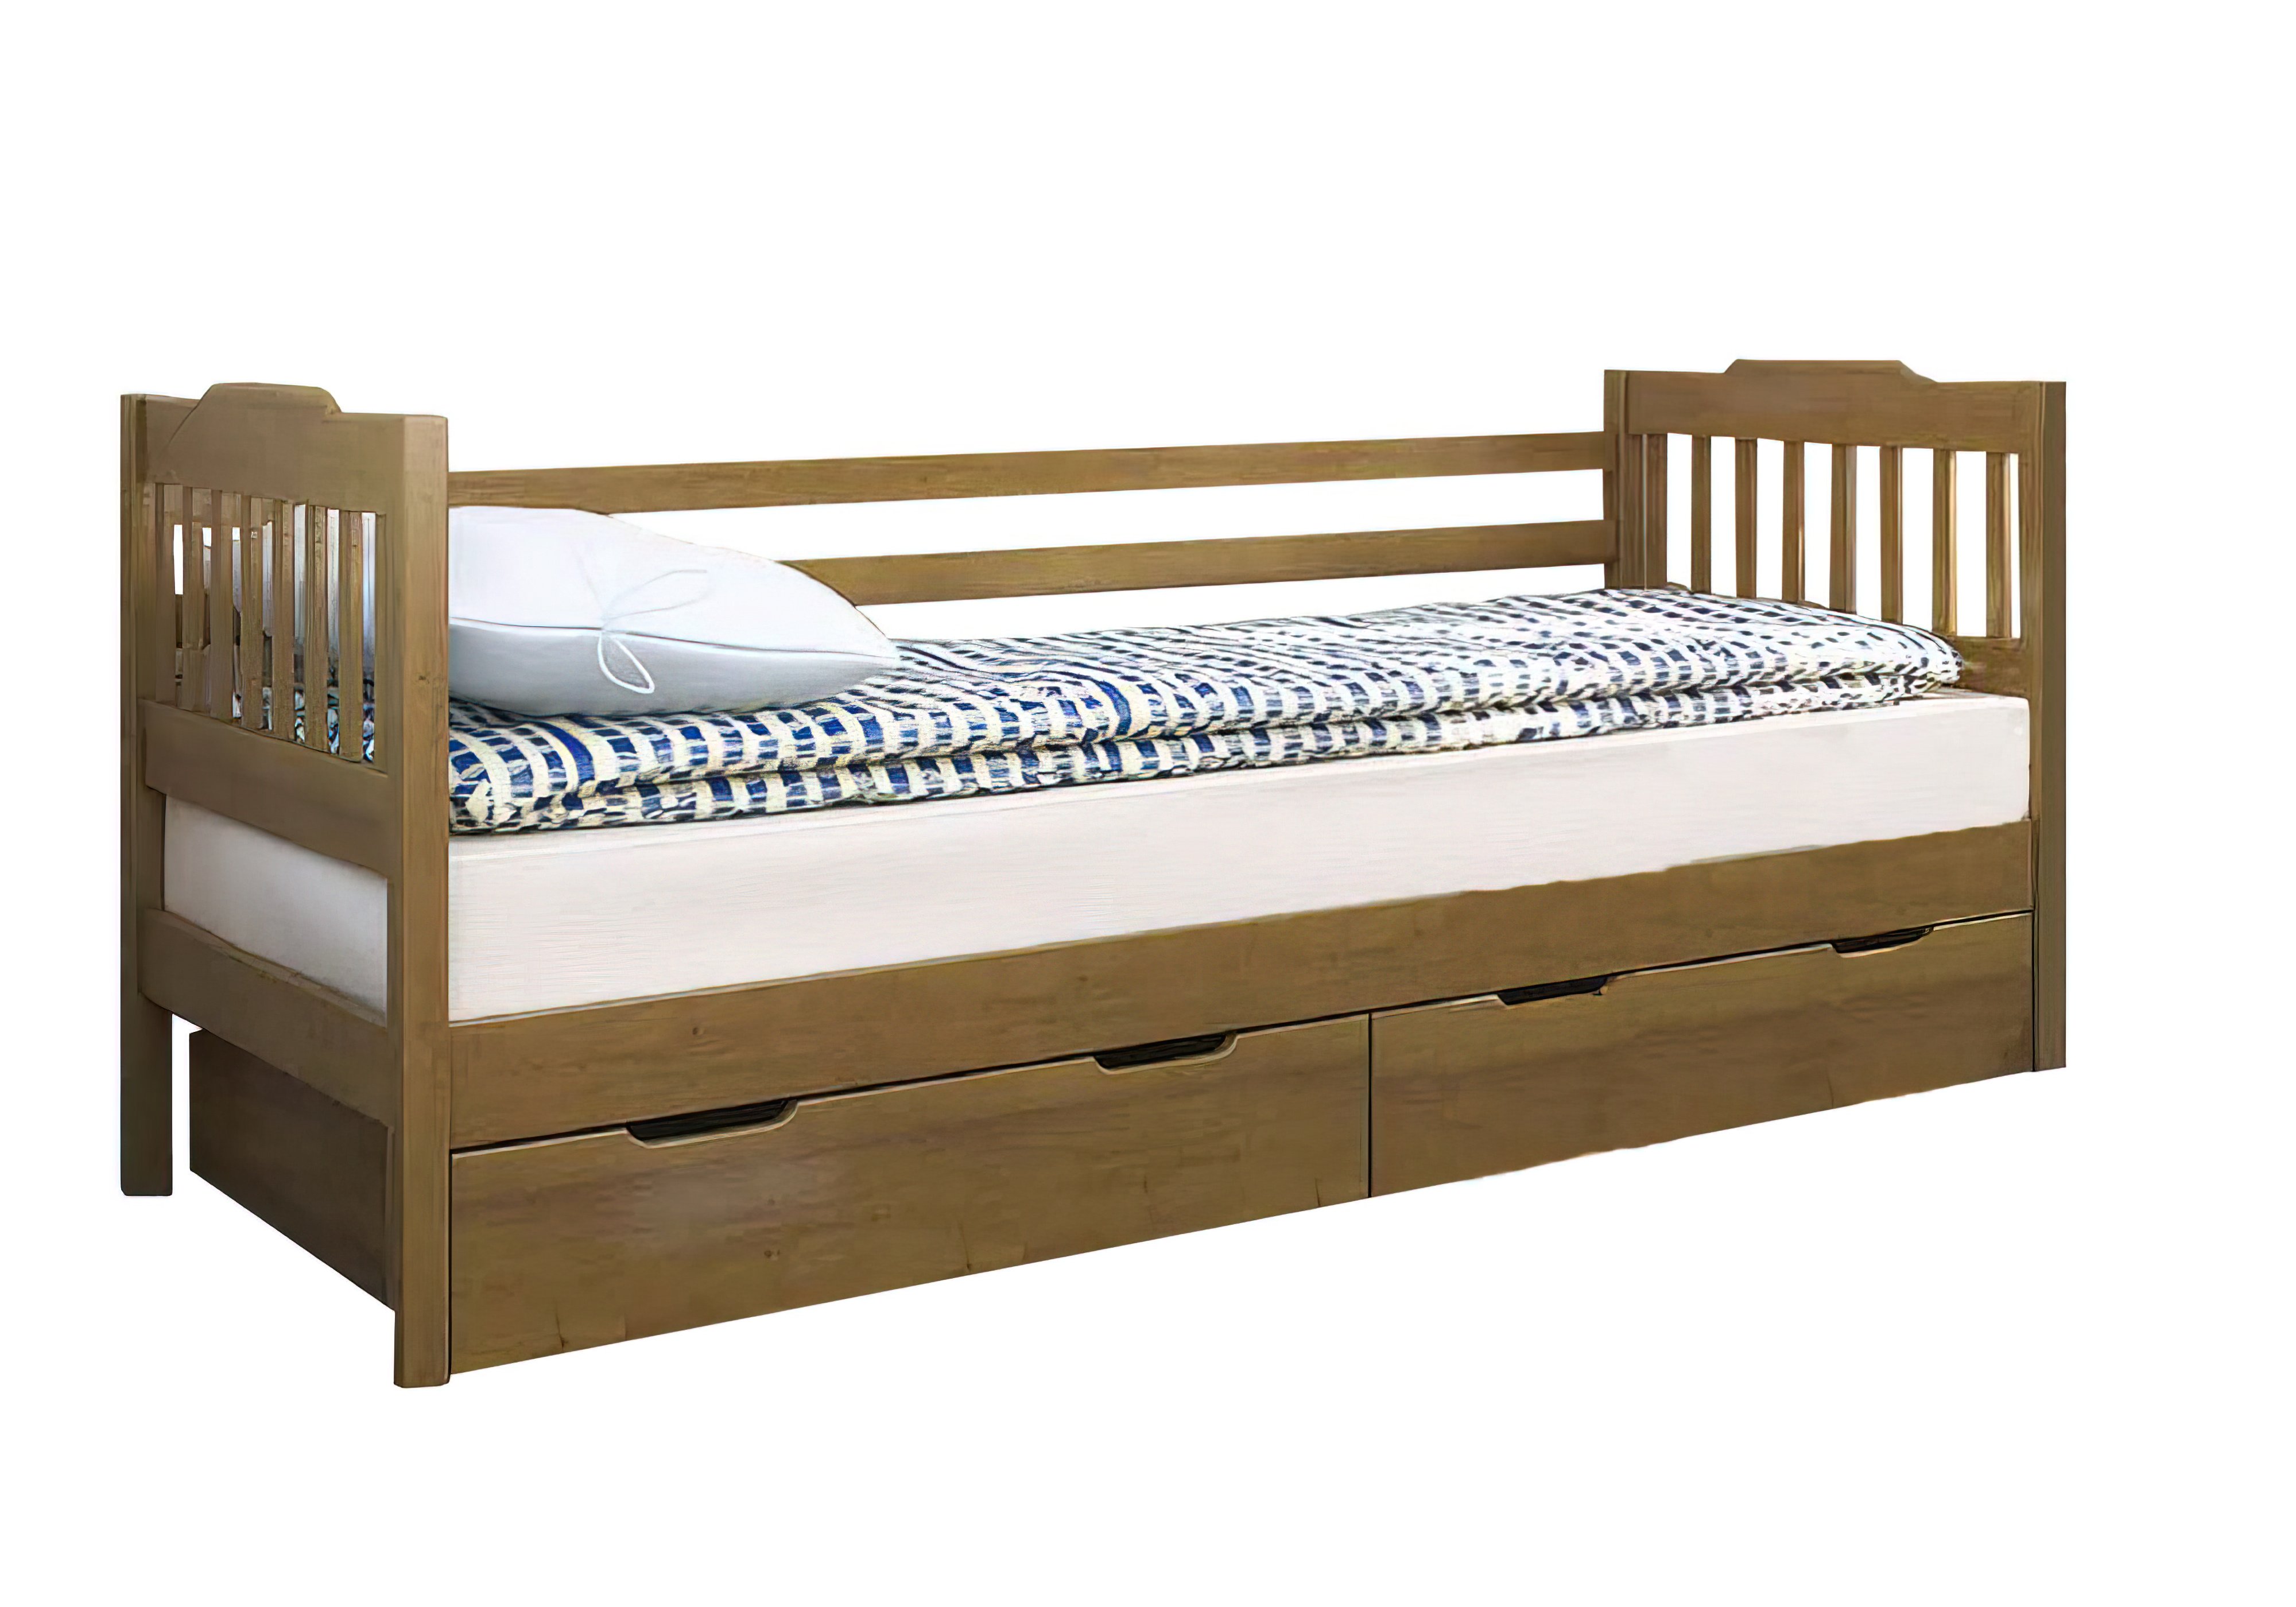 Детская кровать Ева Венгер, Ширина 88см, Глубина 198см, Высота изголовья 85см